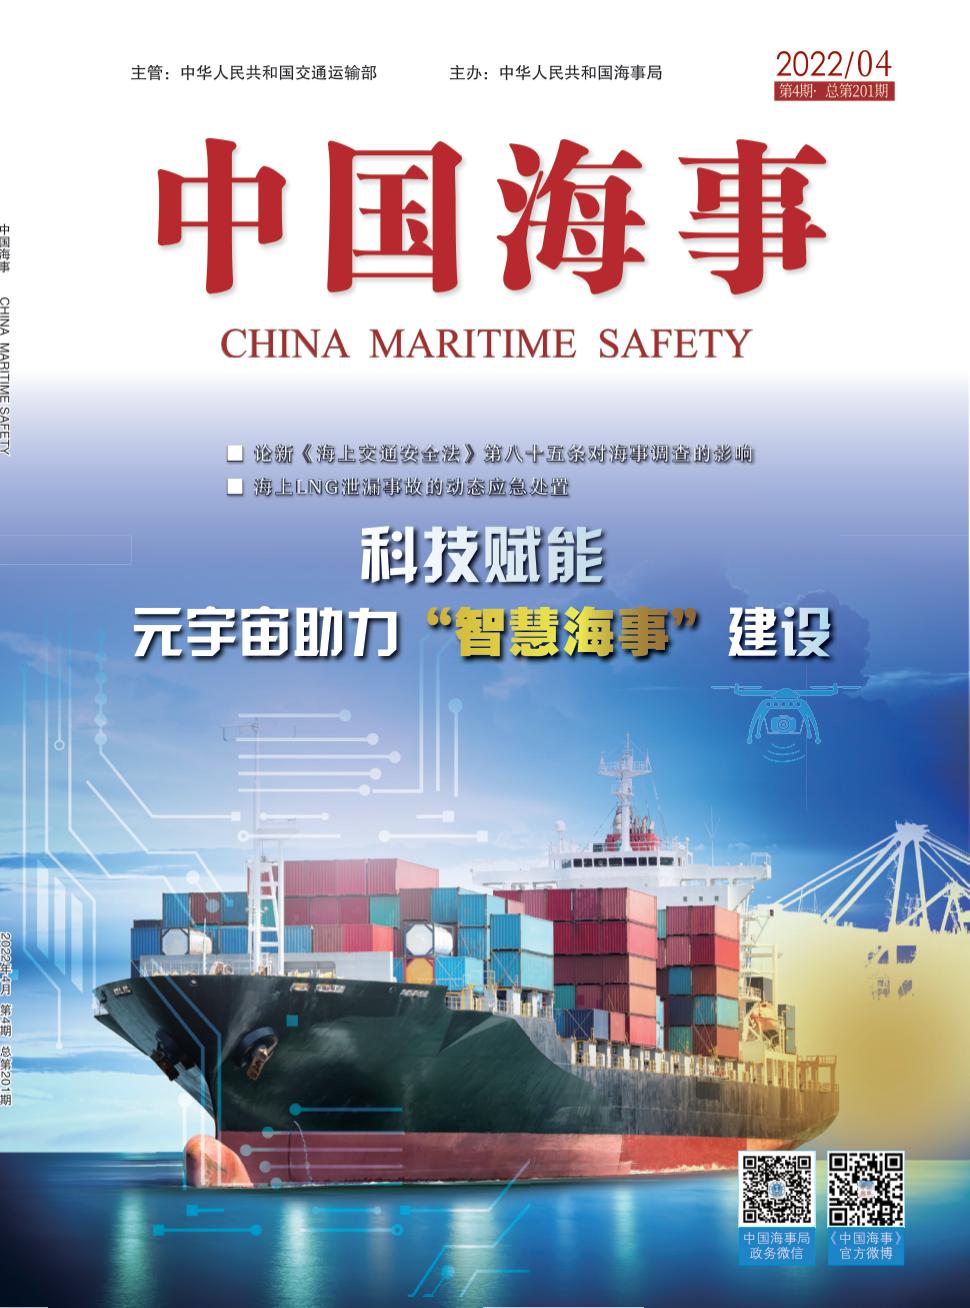 中国海事期刊